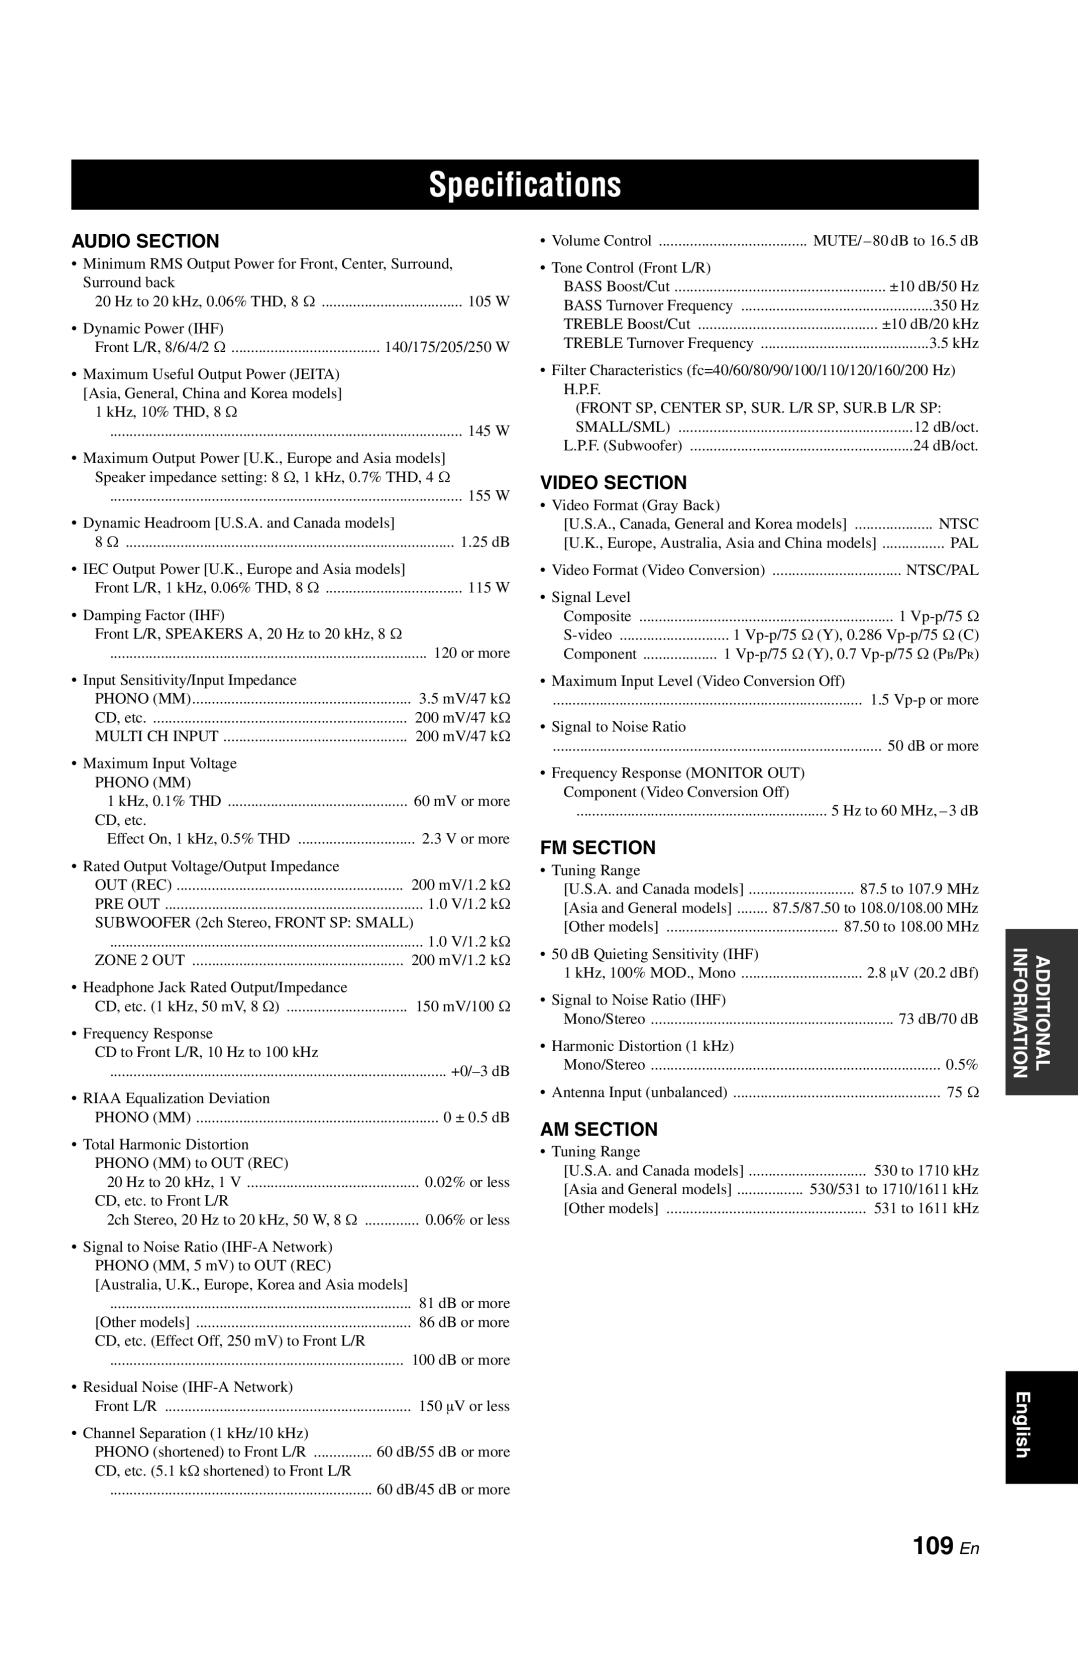 Yamaha RX-V861 owner manual Specifications, 109 En 